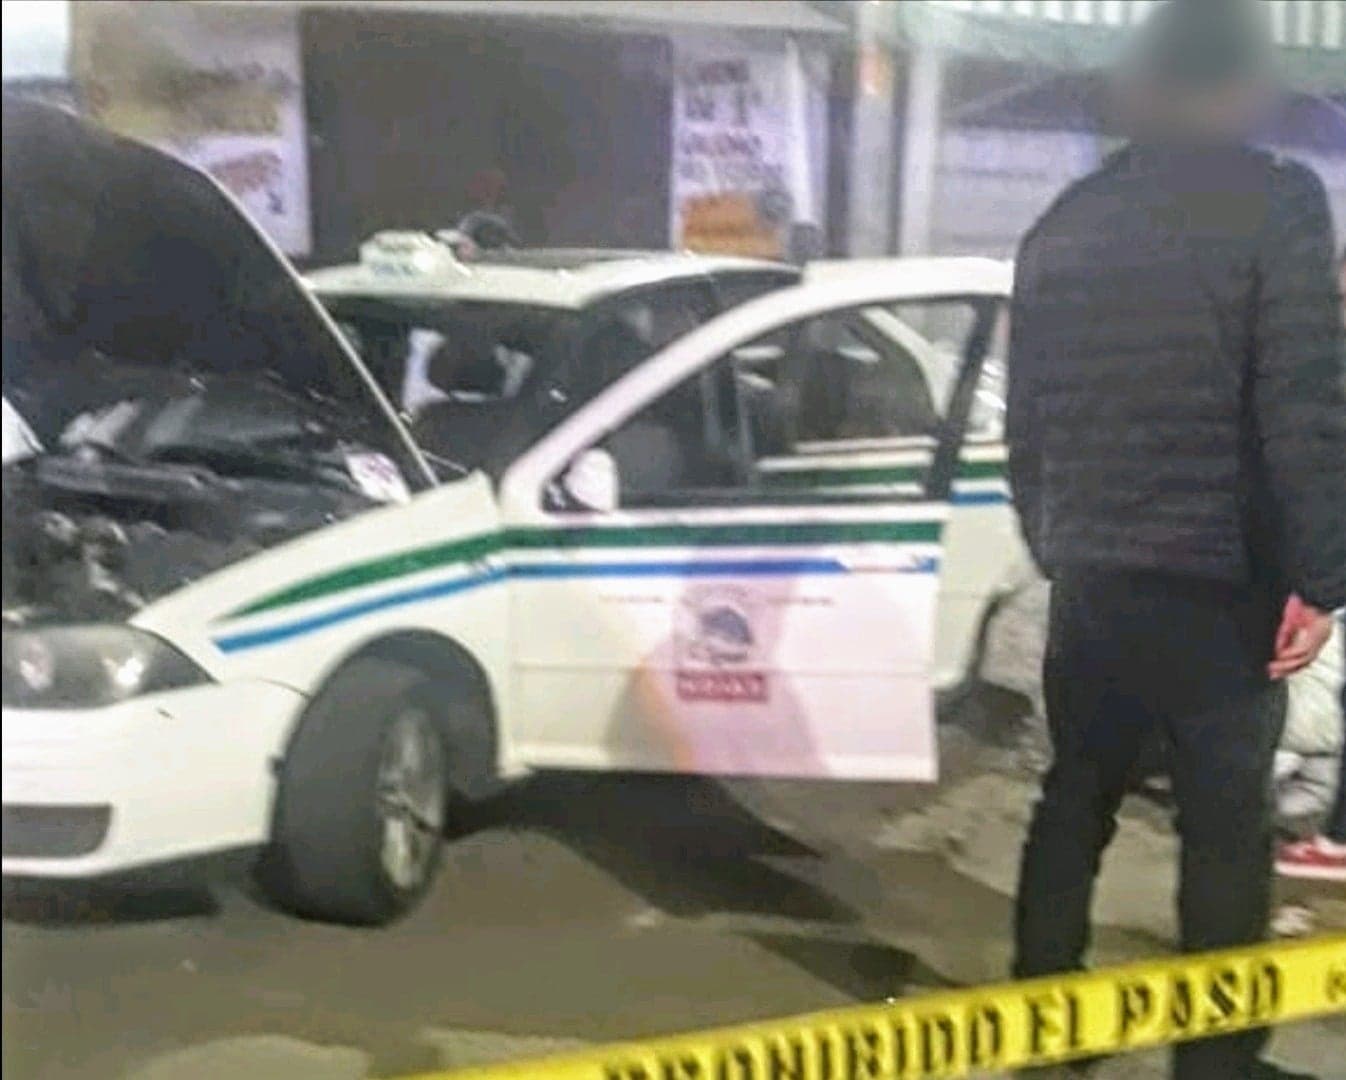 Taxista sobrevive a atentado en la zona poniente de Morelia, Michoacán